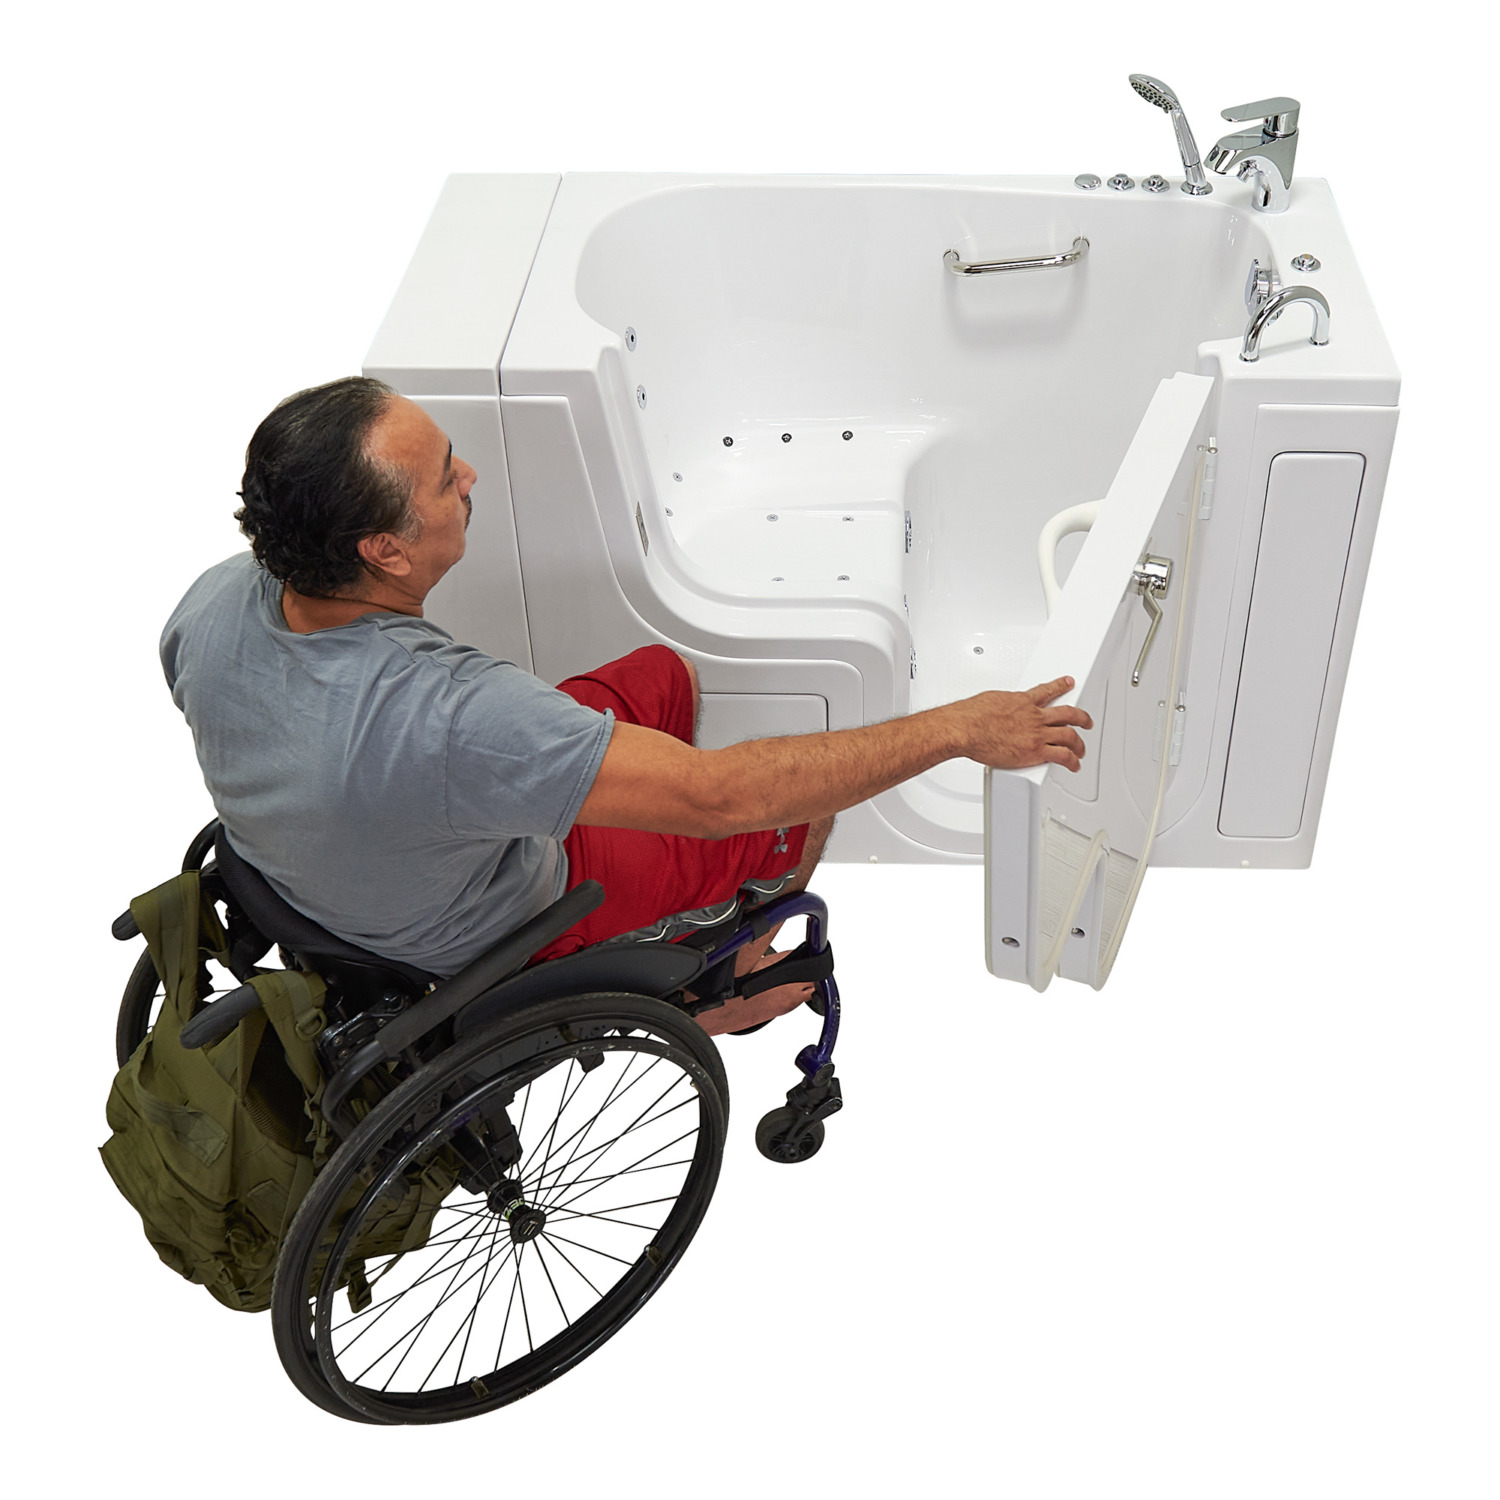 outward-swing-door-wheelchair-accessible-acrylic-walk-in-bathtub-bath-masters-ella-bubbles